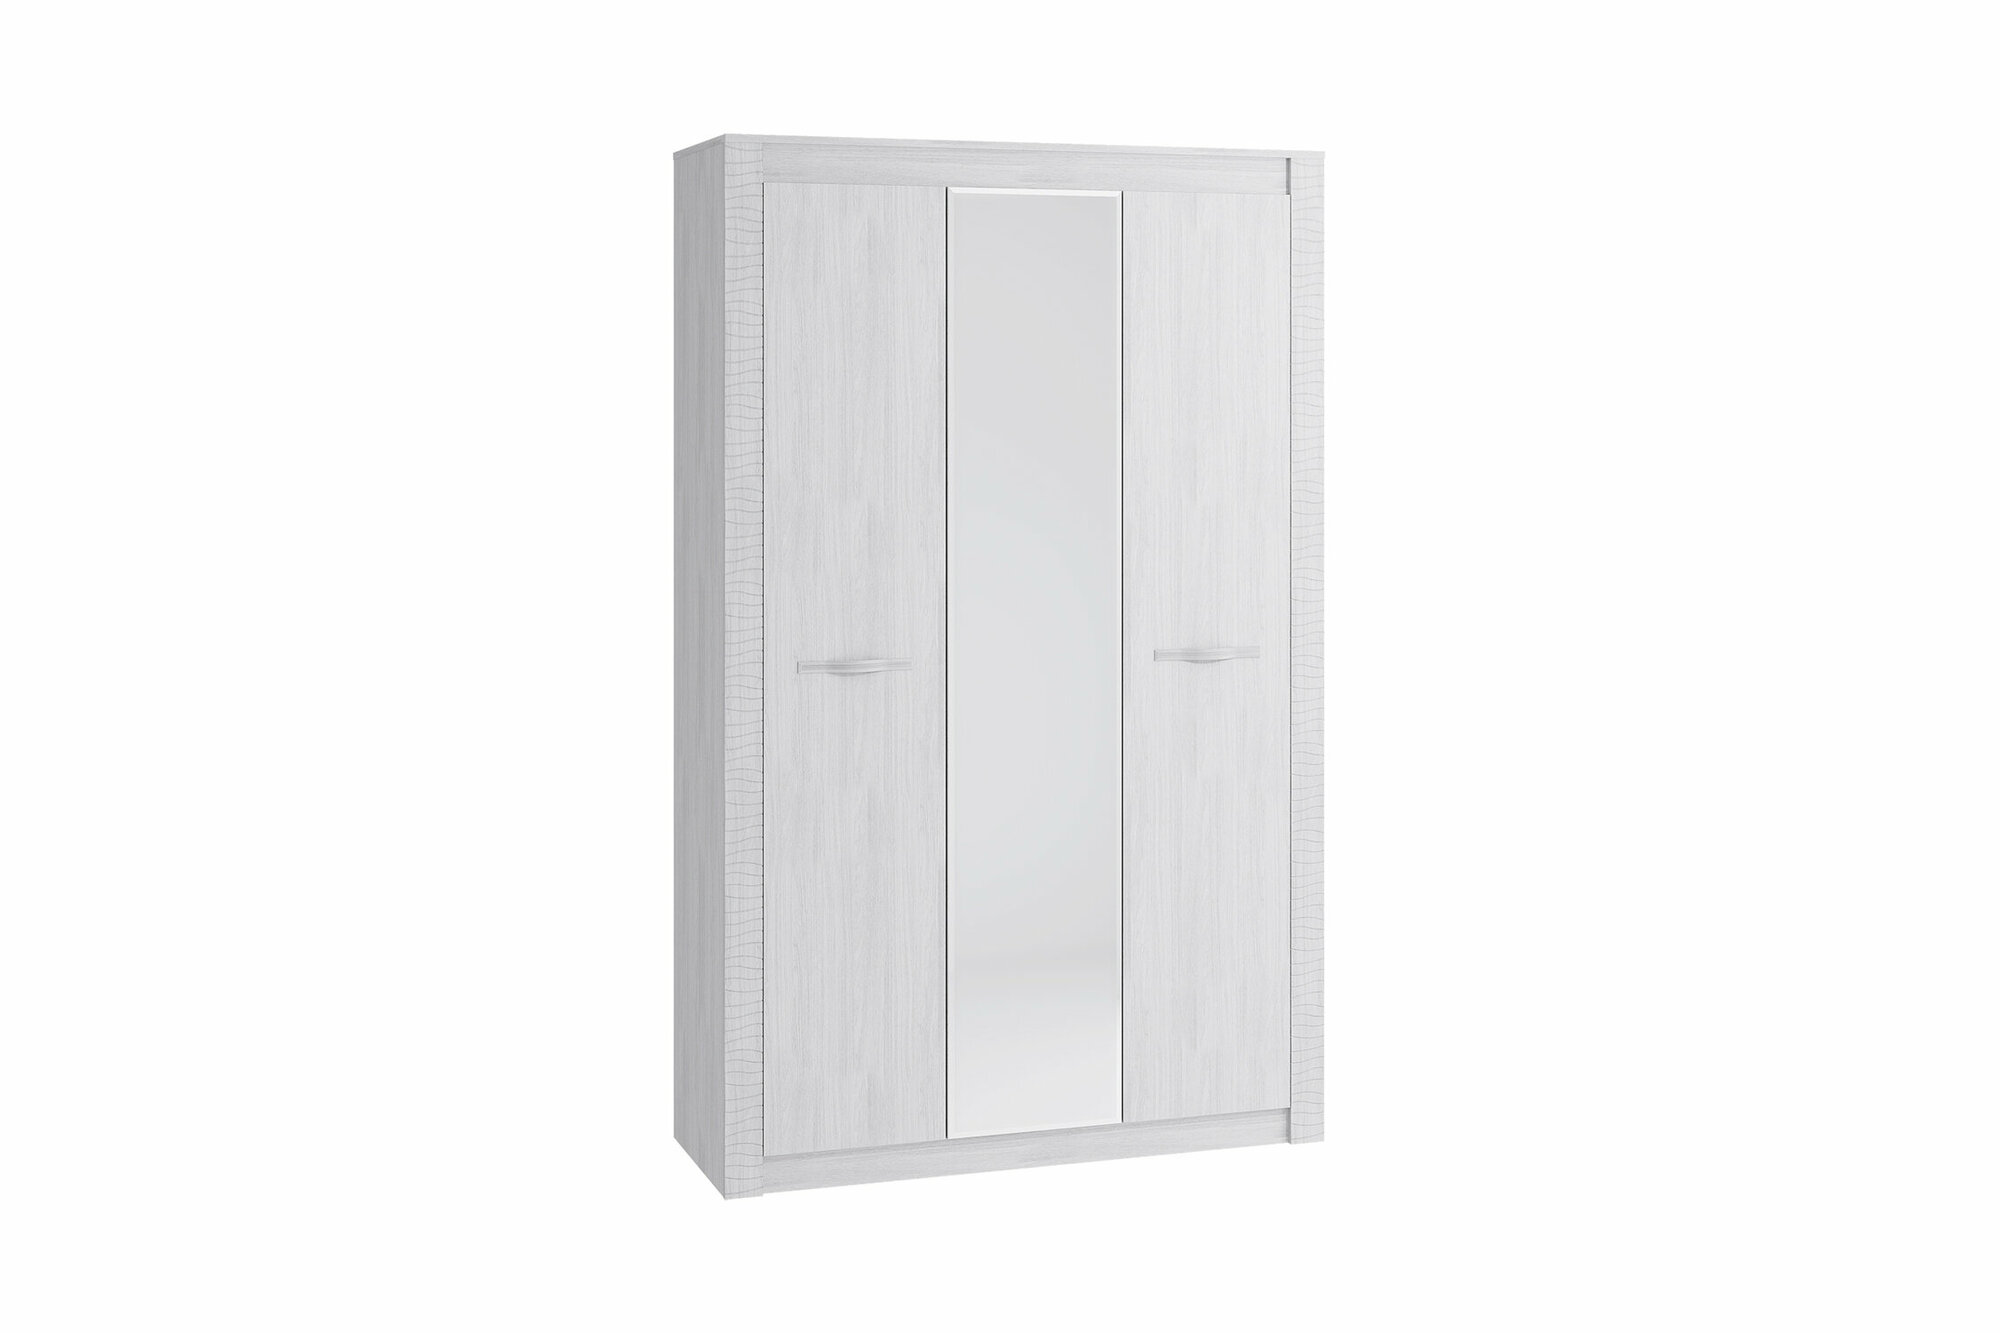 Шкаф трехдверный Мебелони Монако с зеркалом ясень белый 136х51х220 см